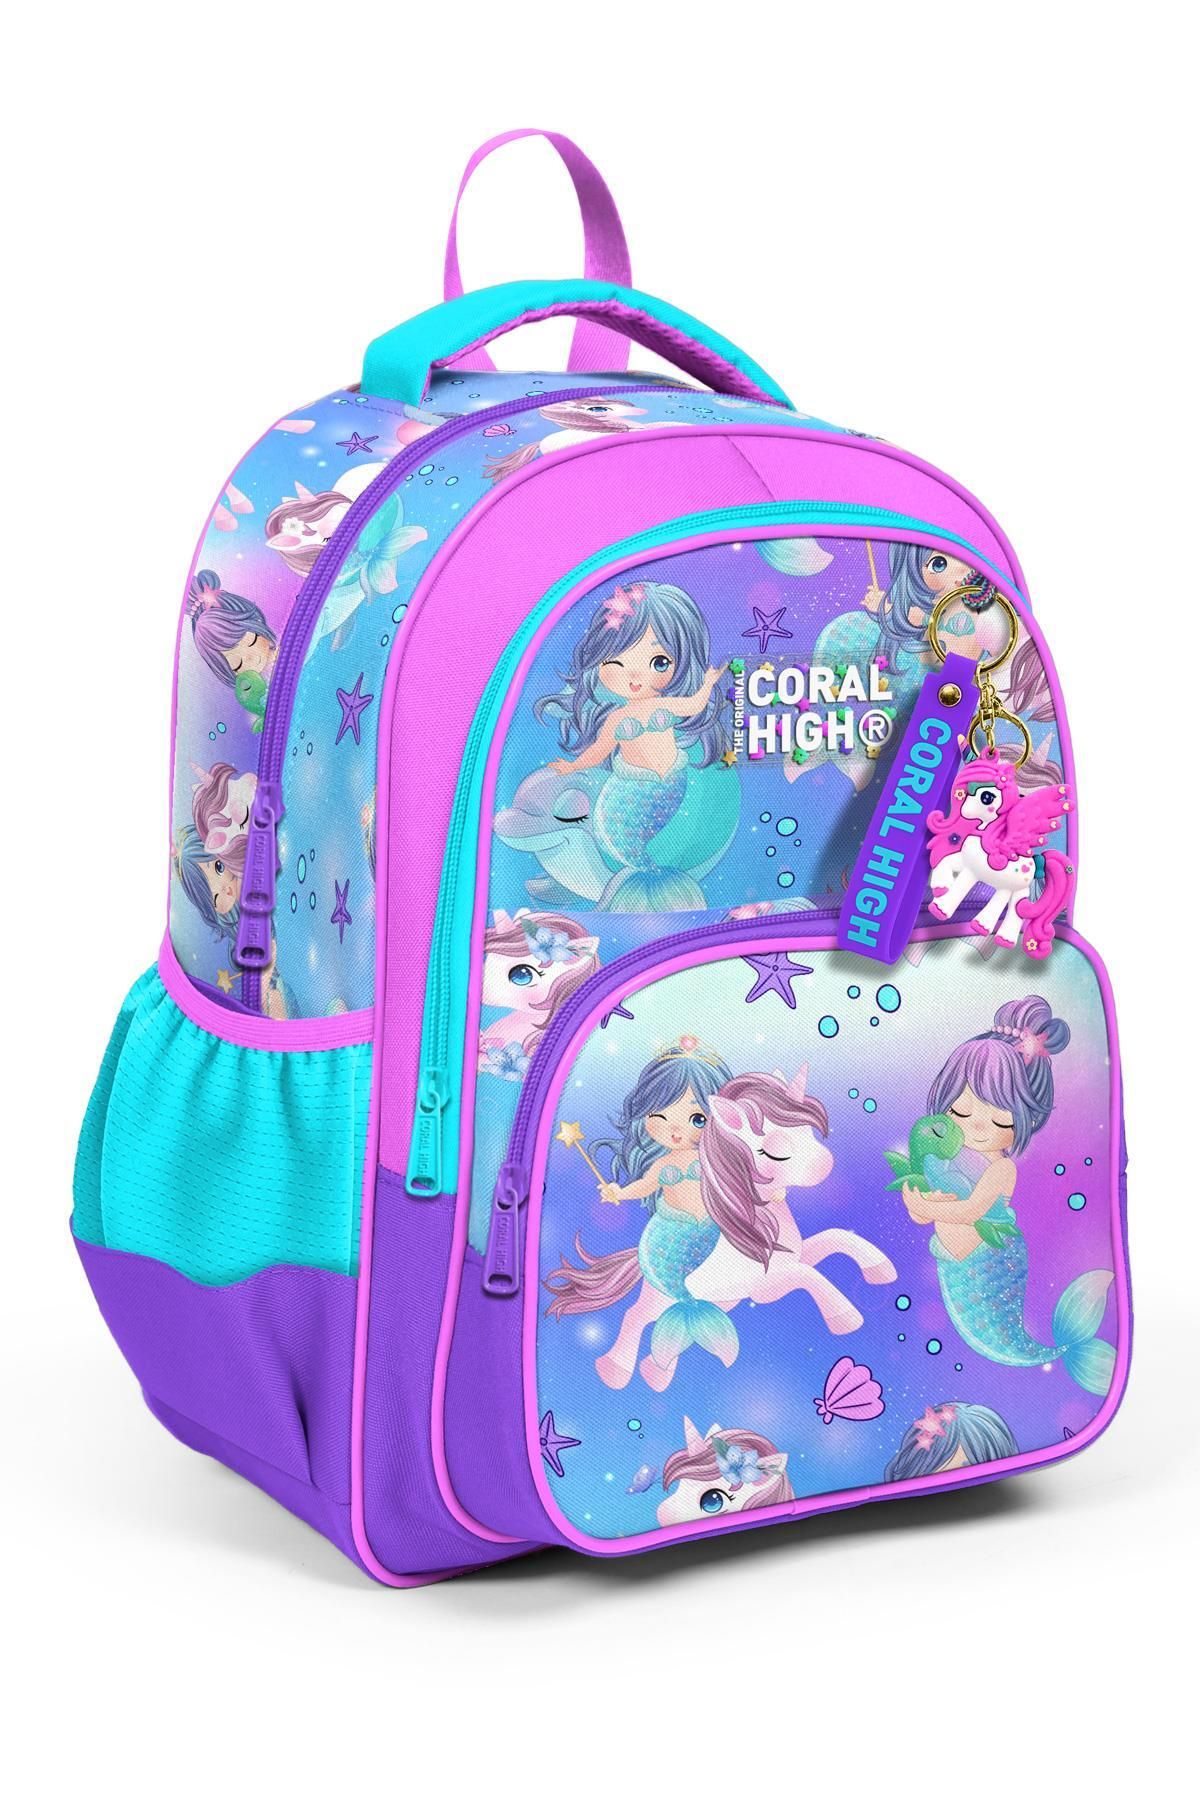 Coral High Kids Mor Pembe Unicorn Deniz Kızı Desenli Üç Bölmeli Okul Sırt Çantası 23657